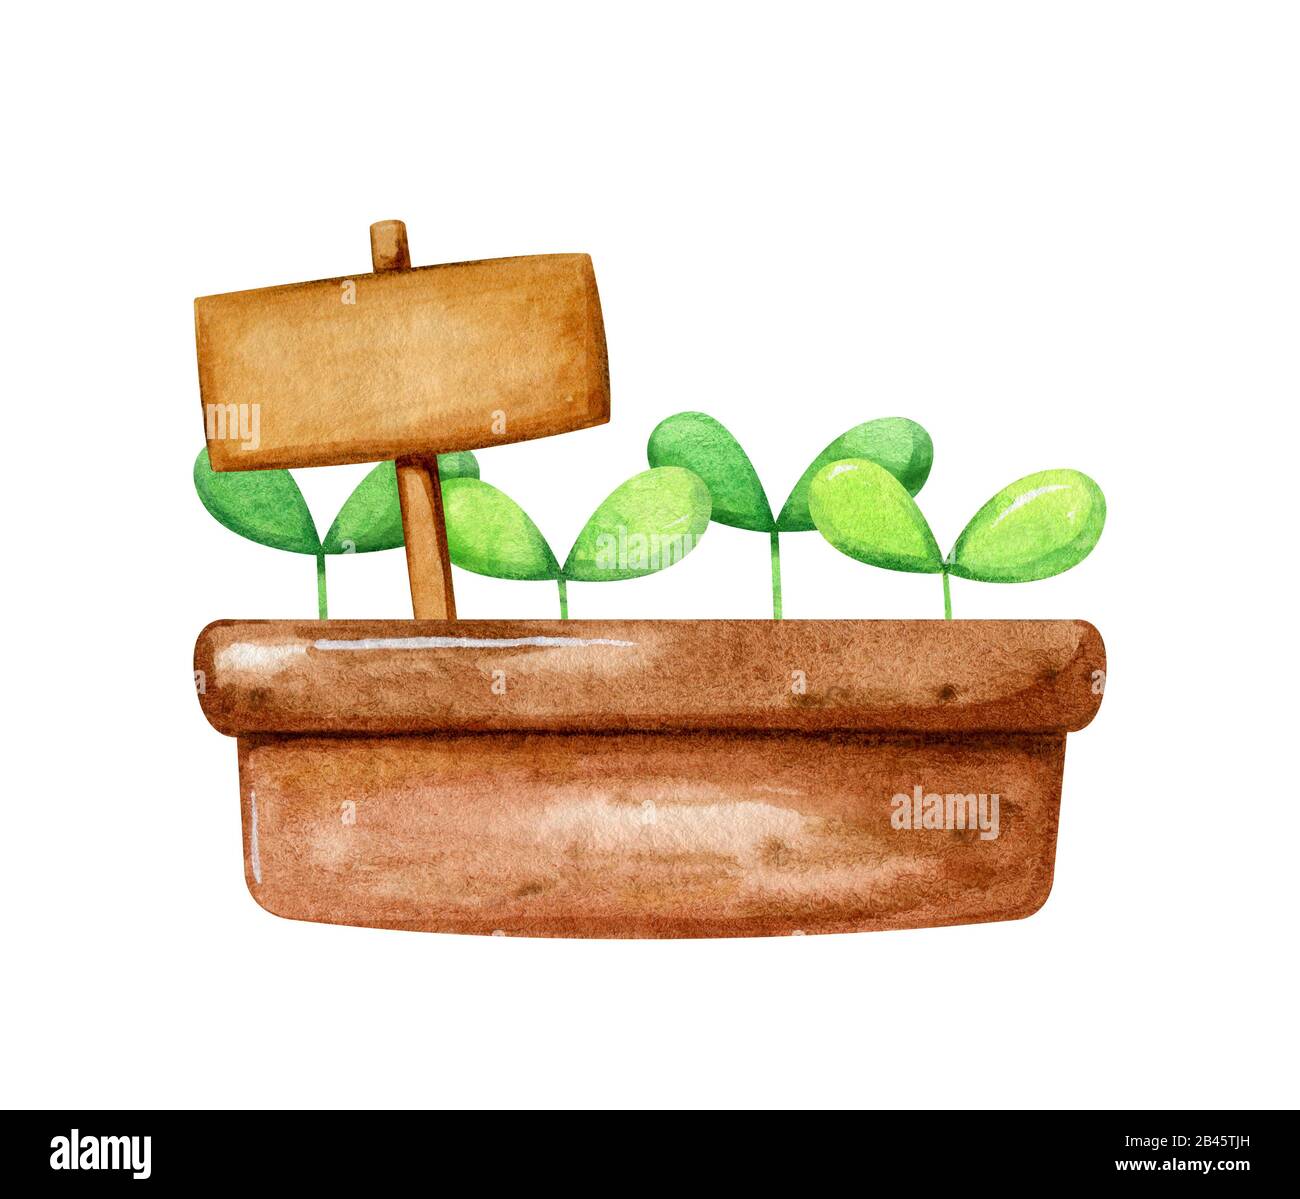 Brauner Topf mit niedlichem kleinen Spruß, darin wachsend, und einem  Namensschild für die Beschriftung. Cartoon handgezeichneter Stil in  Aquarell Stockfotografie - Alamy